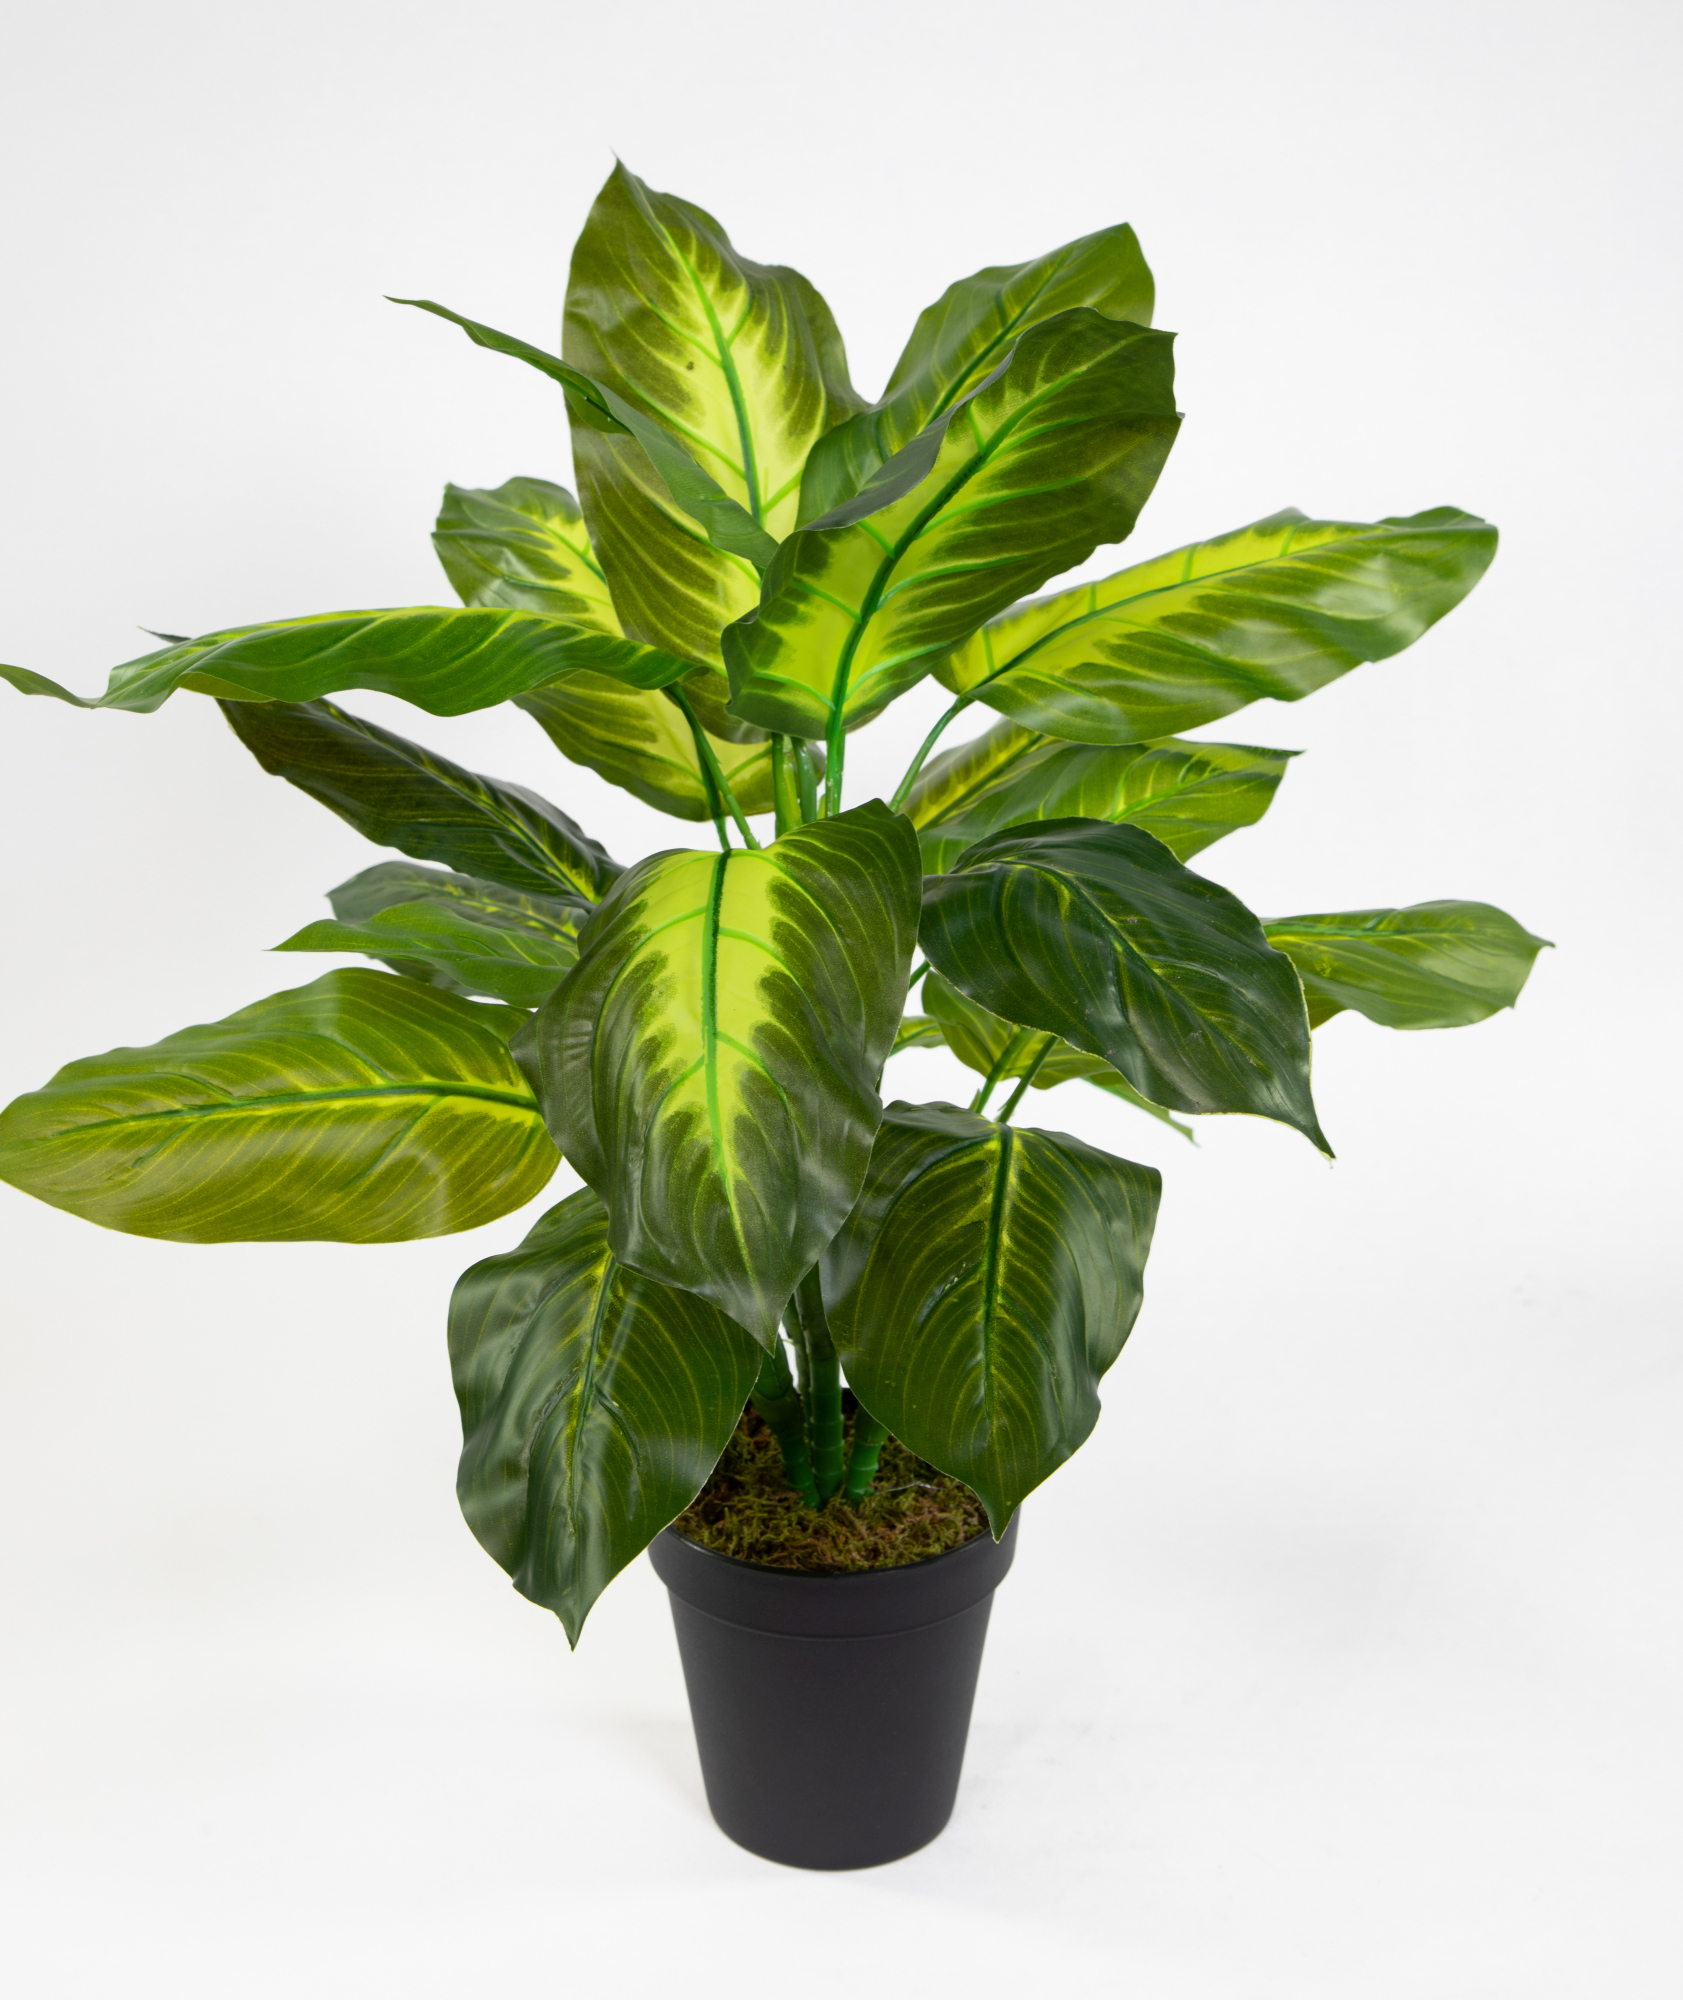 Philo Real künstliche Touch 52cm Pflanzen Kunstpflanzen grün-hellgrün Topf Philopflanze ZF im